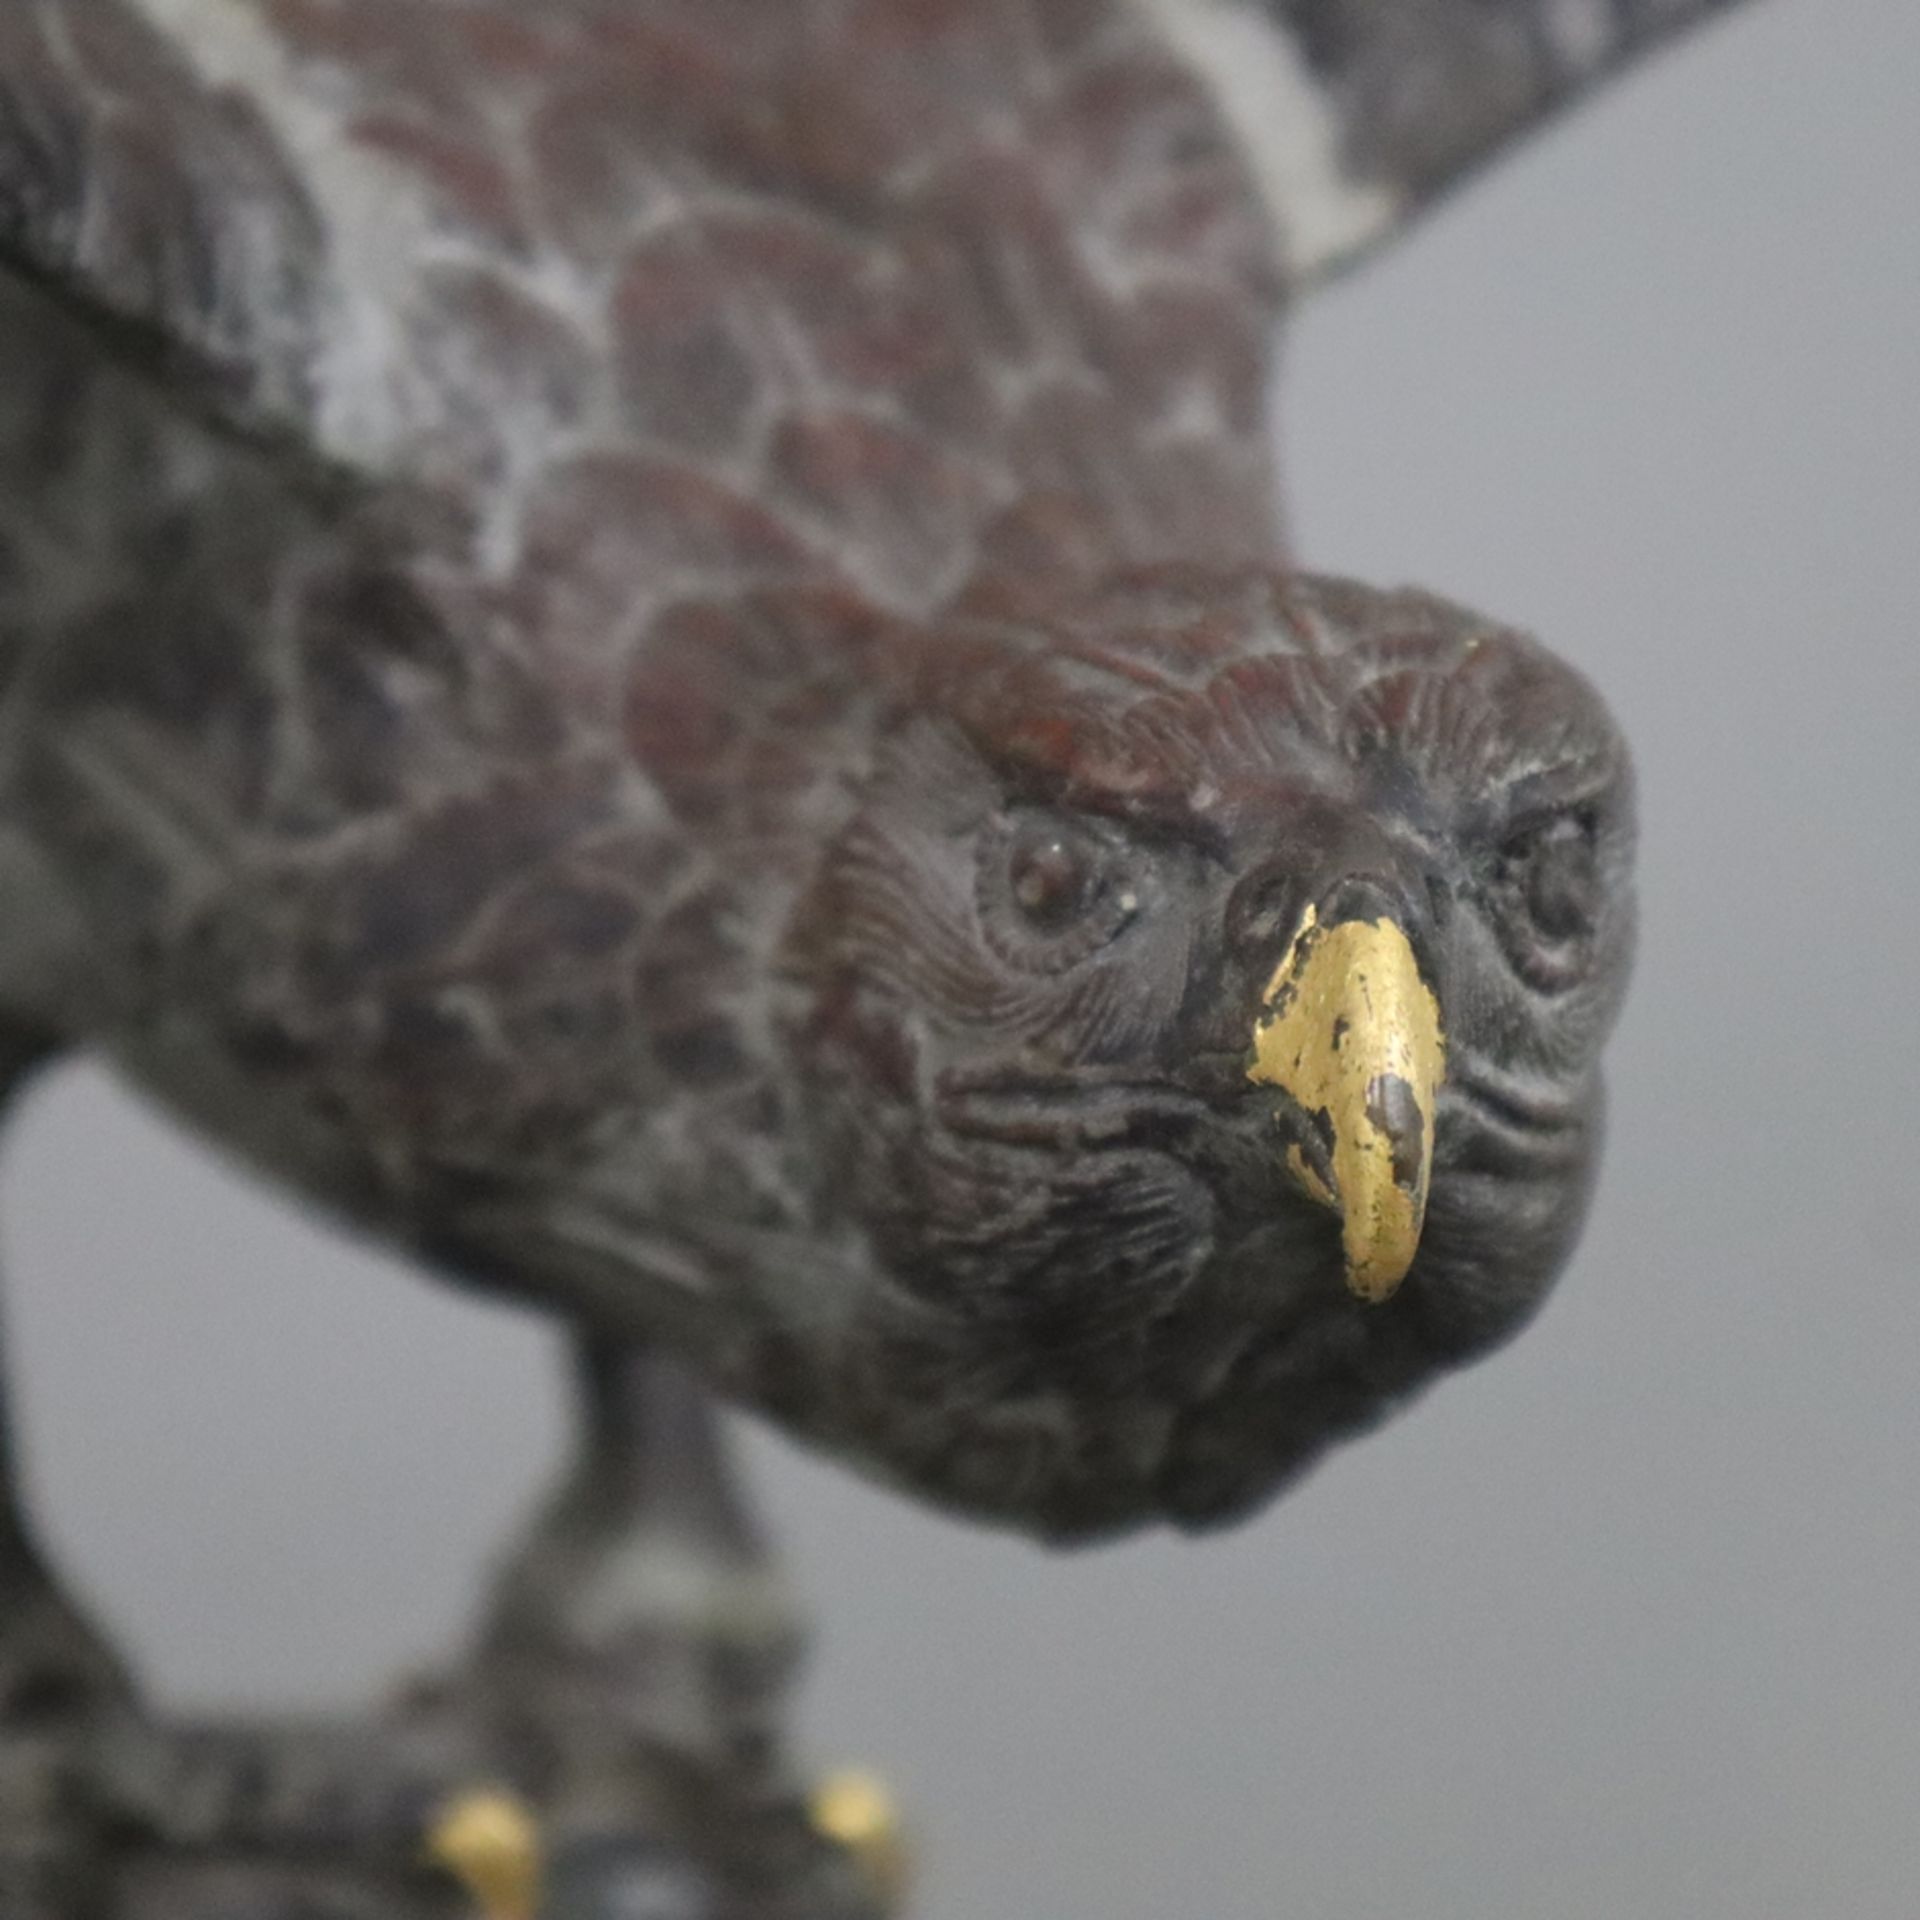 Tierskulptur "Adler" - Weißmetall, braun patiniert, naturalistische Darstellung eines auf Felsensoc - Image 3 of 11